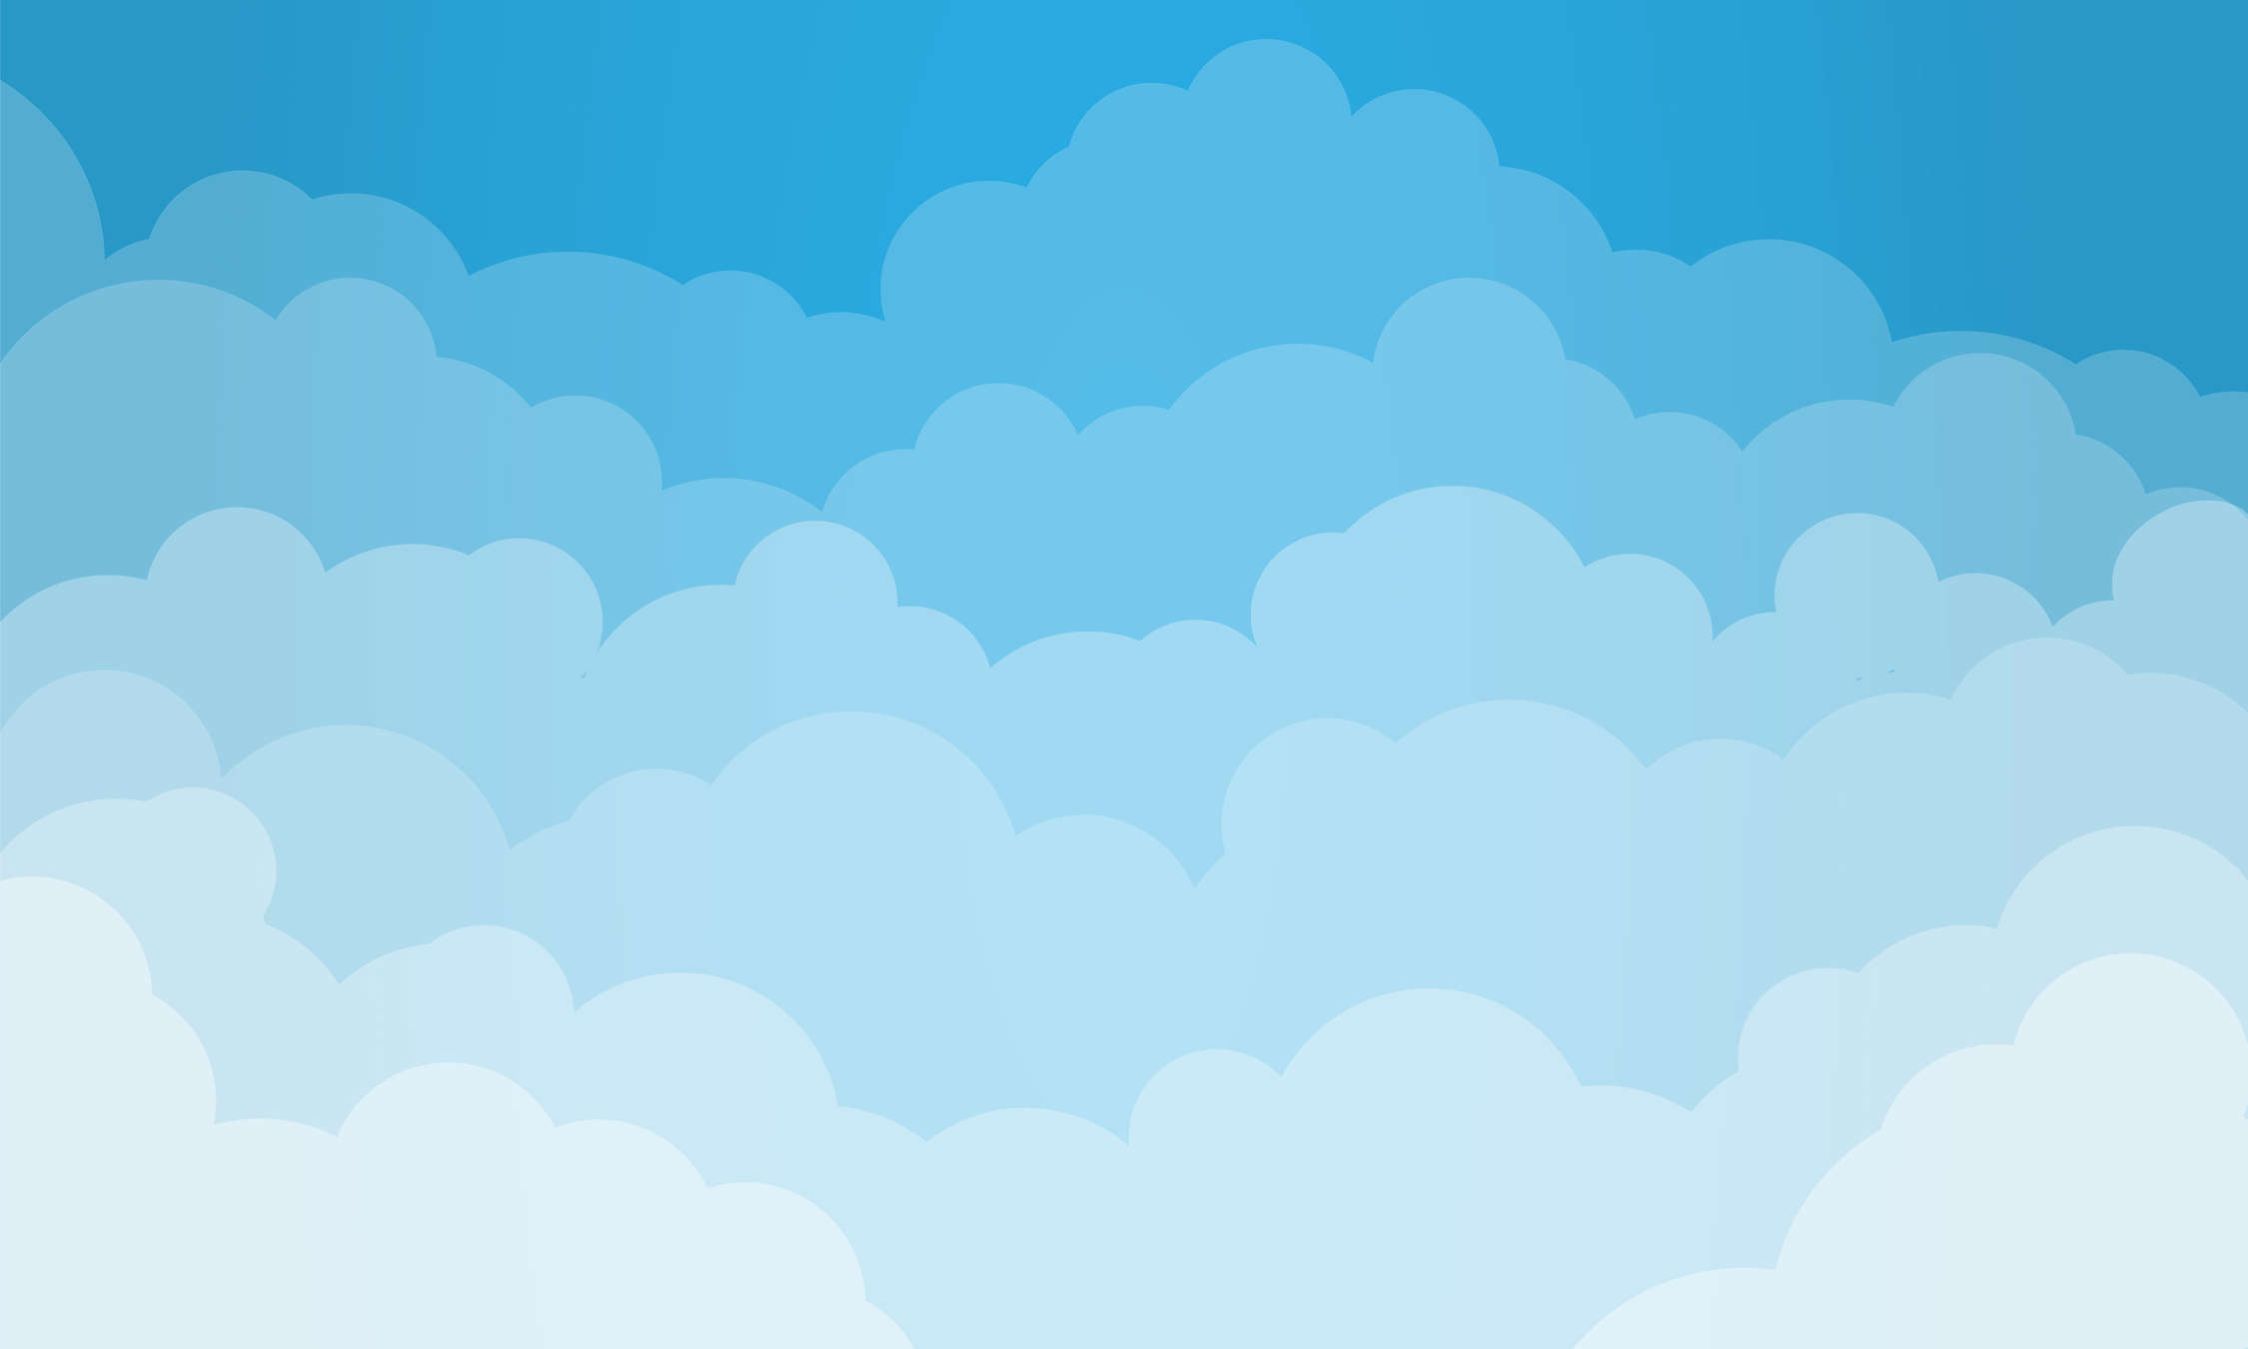             Fototapete Himmel mit Wolken im Comic-Stil – Glattes & perlmutt-schimmerndes Vlies
        